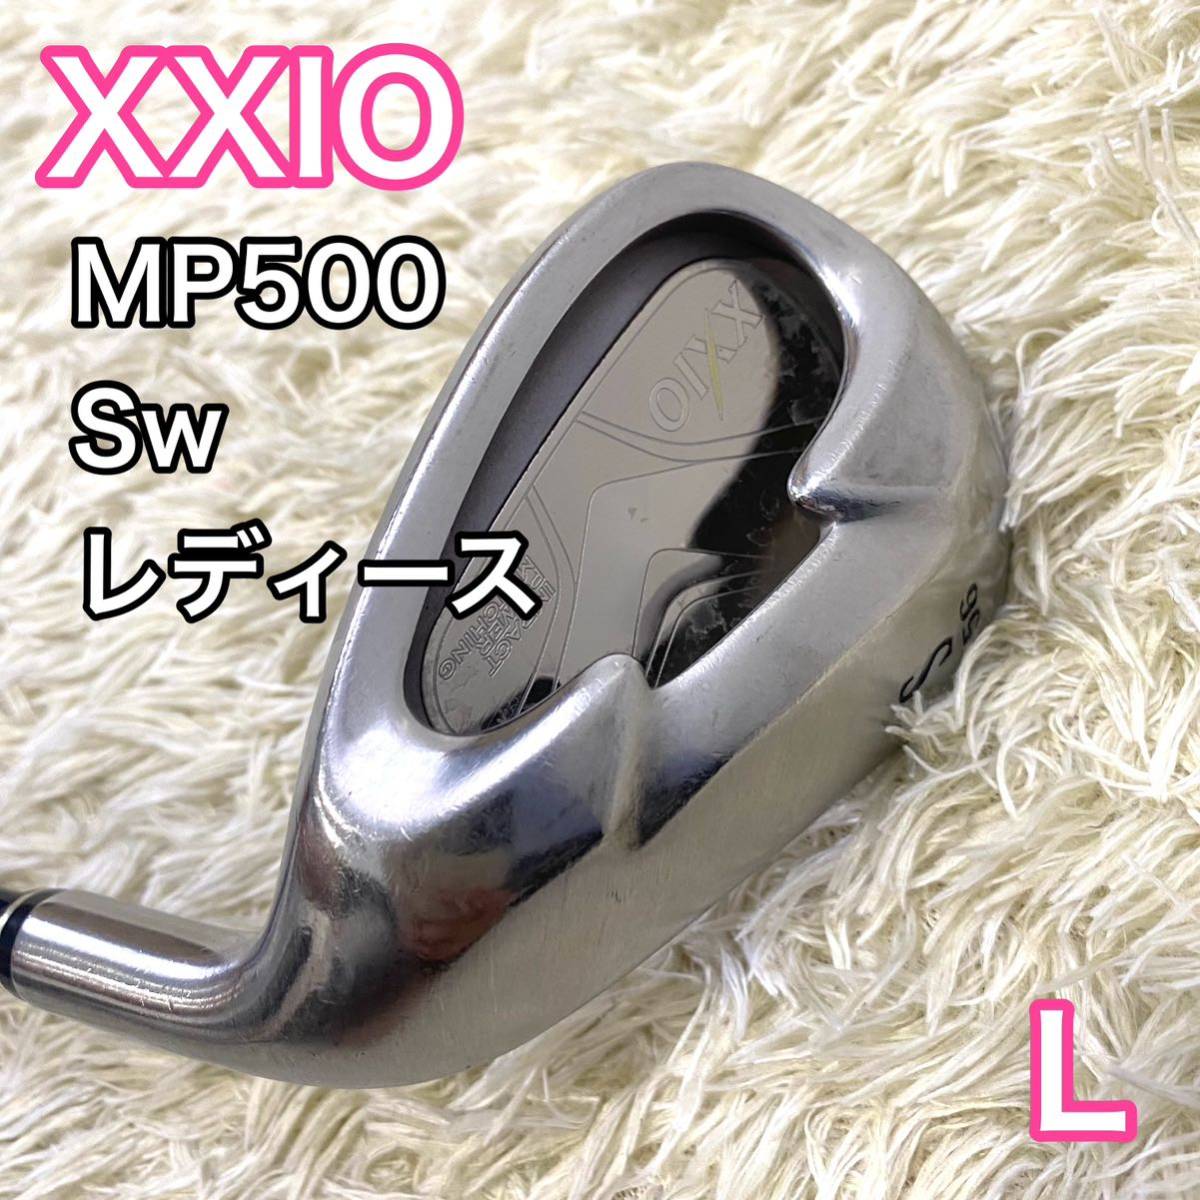 ゼクシオ XXIO5 MP500 Sw サンドウエッジ 右 レディース L